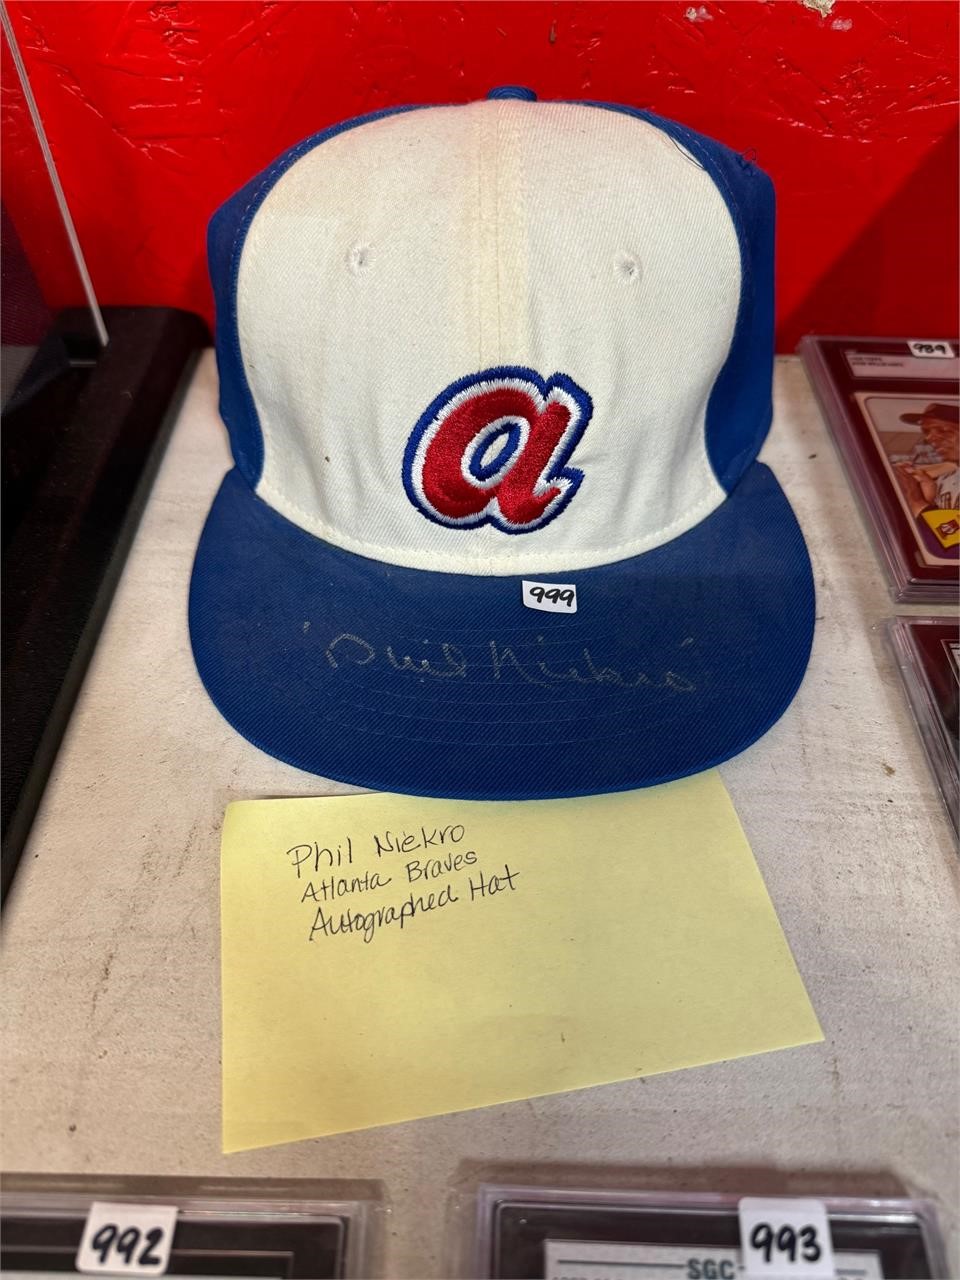 Phil Niebro - Atlanta Autographed Hat